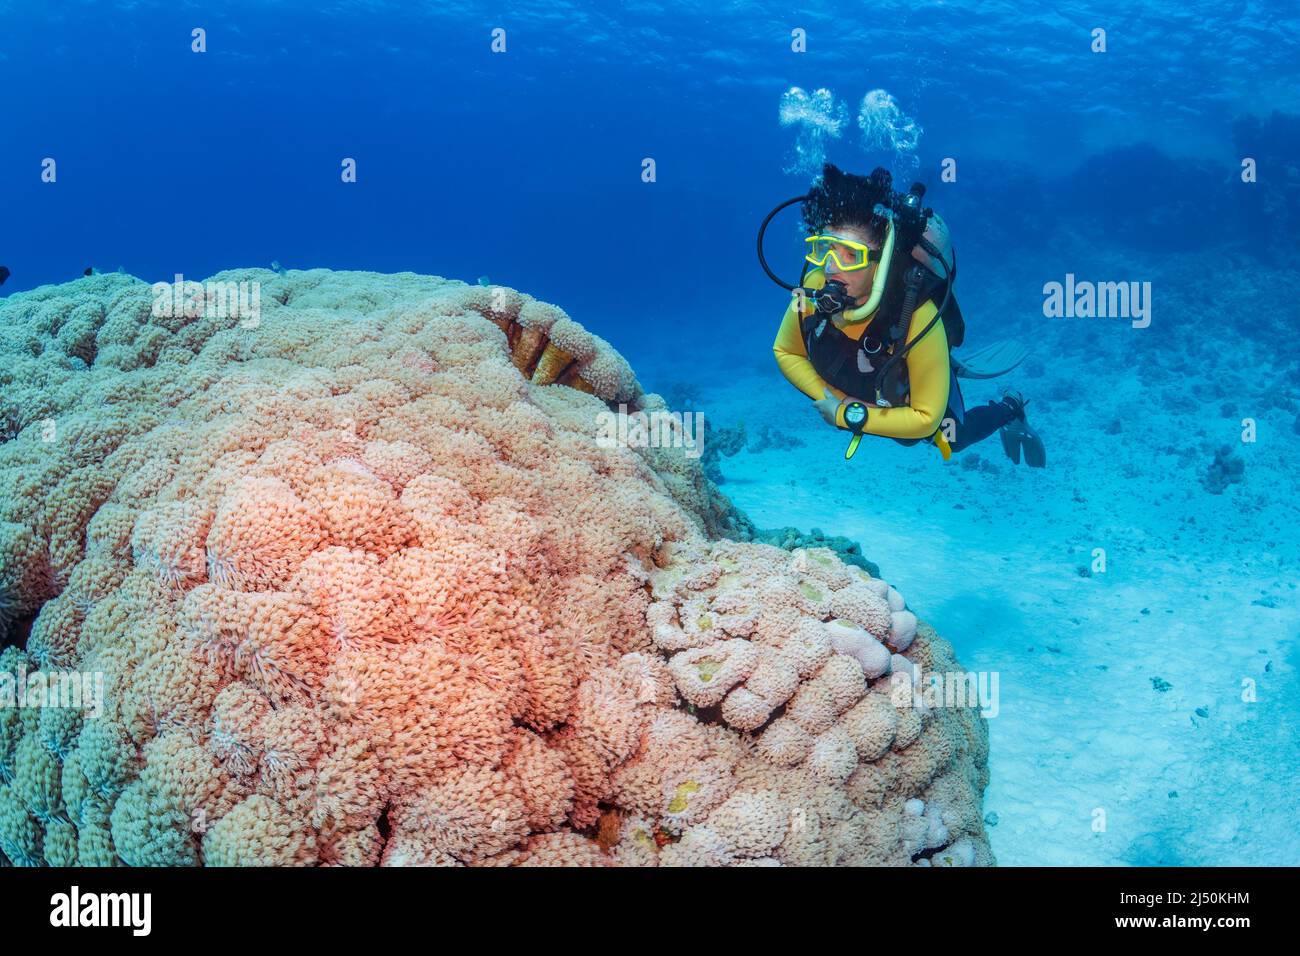 Exploration sous l'eau. Une femme plonge sur un récif tropical avec un fond bleu et de beaux coraux. Banque D'Images